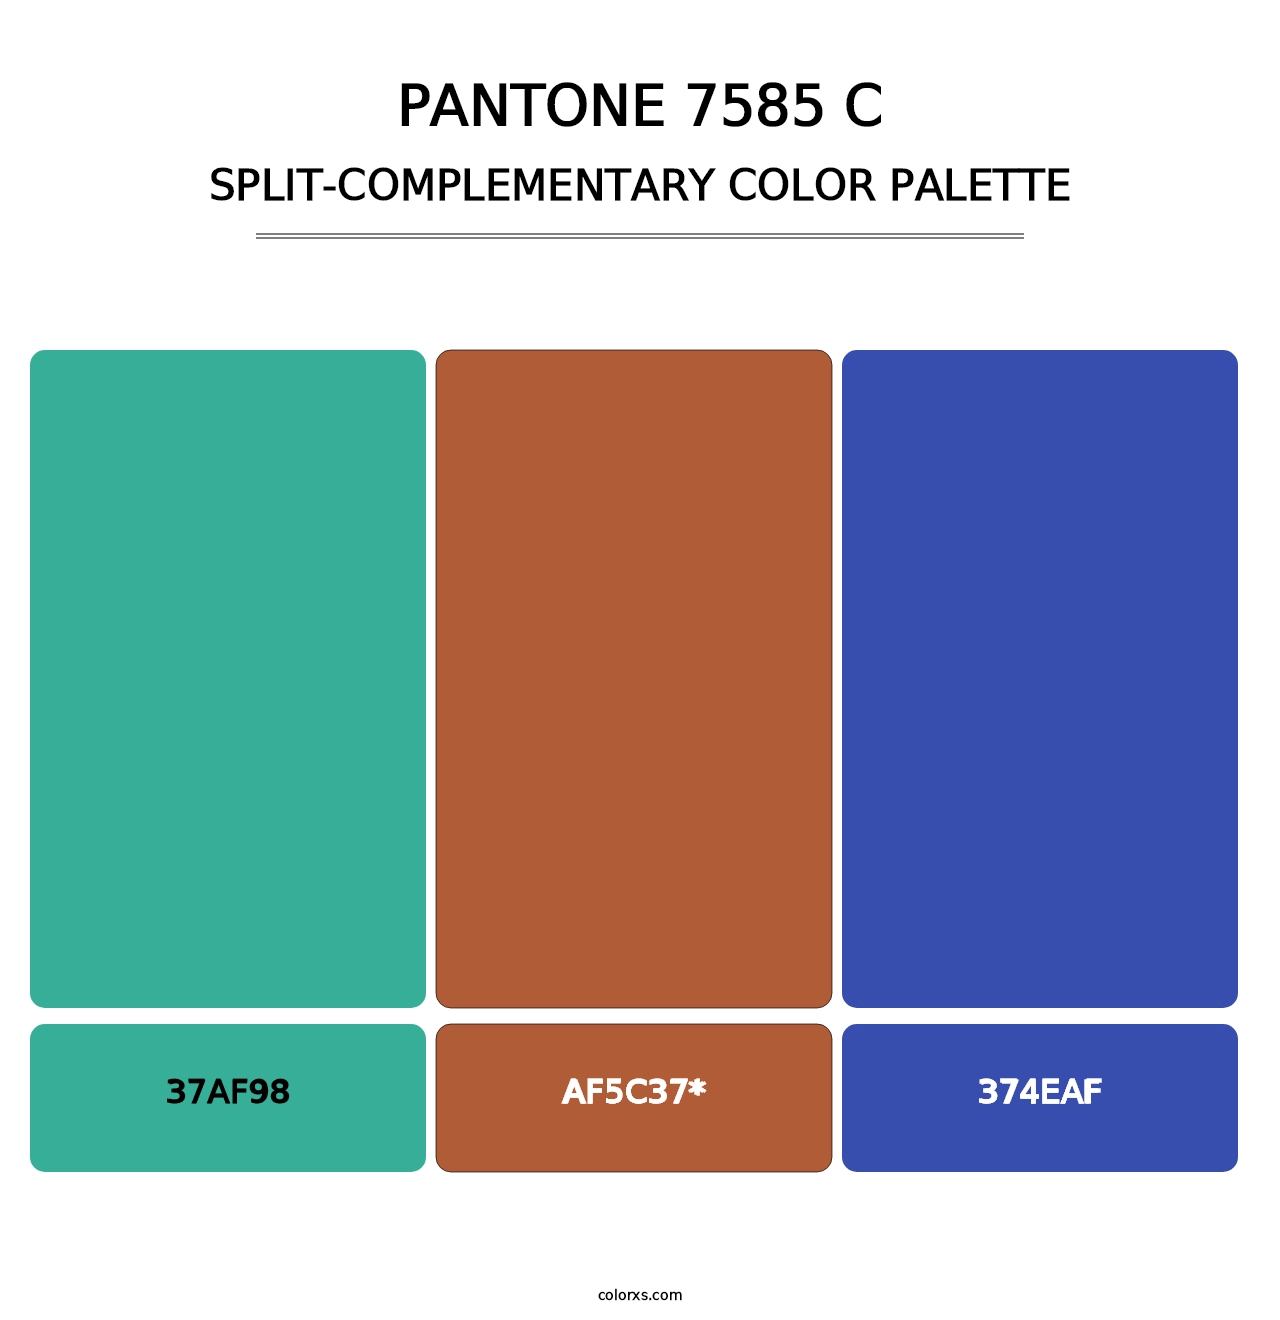 PANTONE 7585 C - Split-Complementary Color Palette